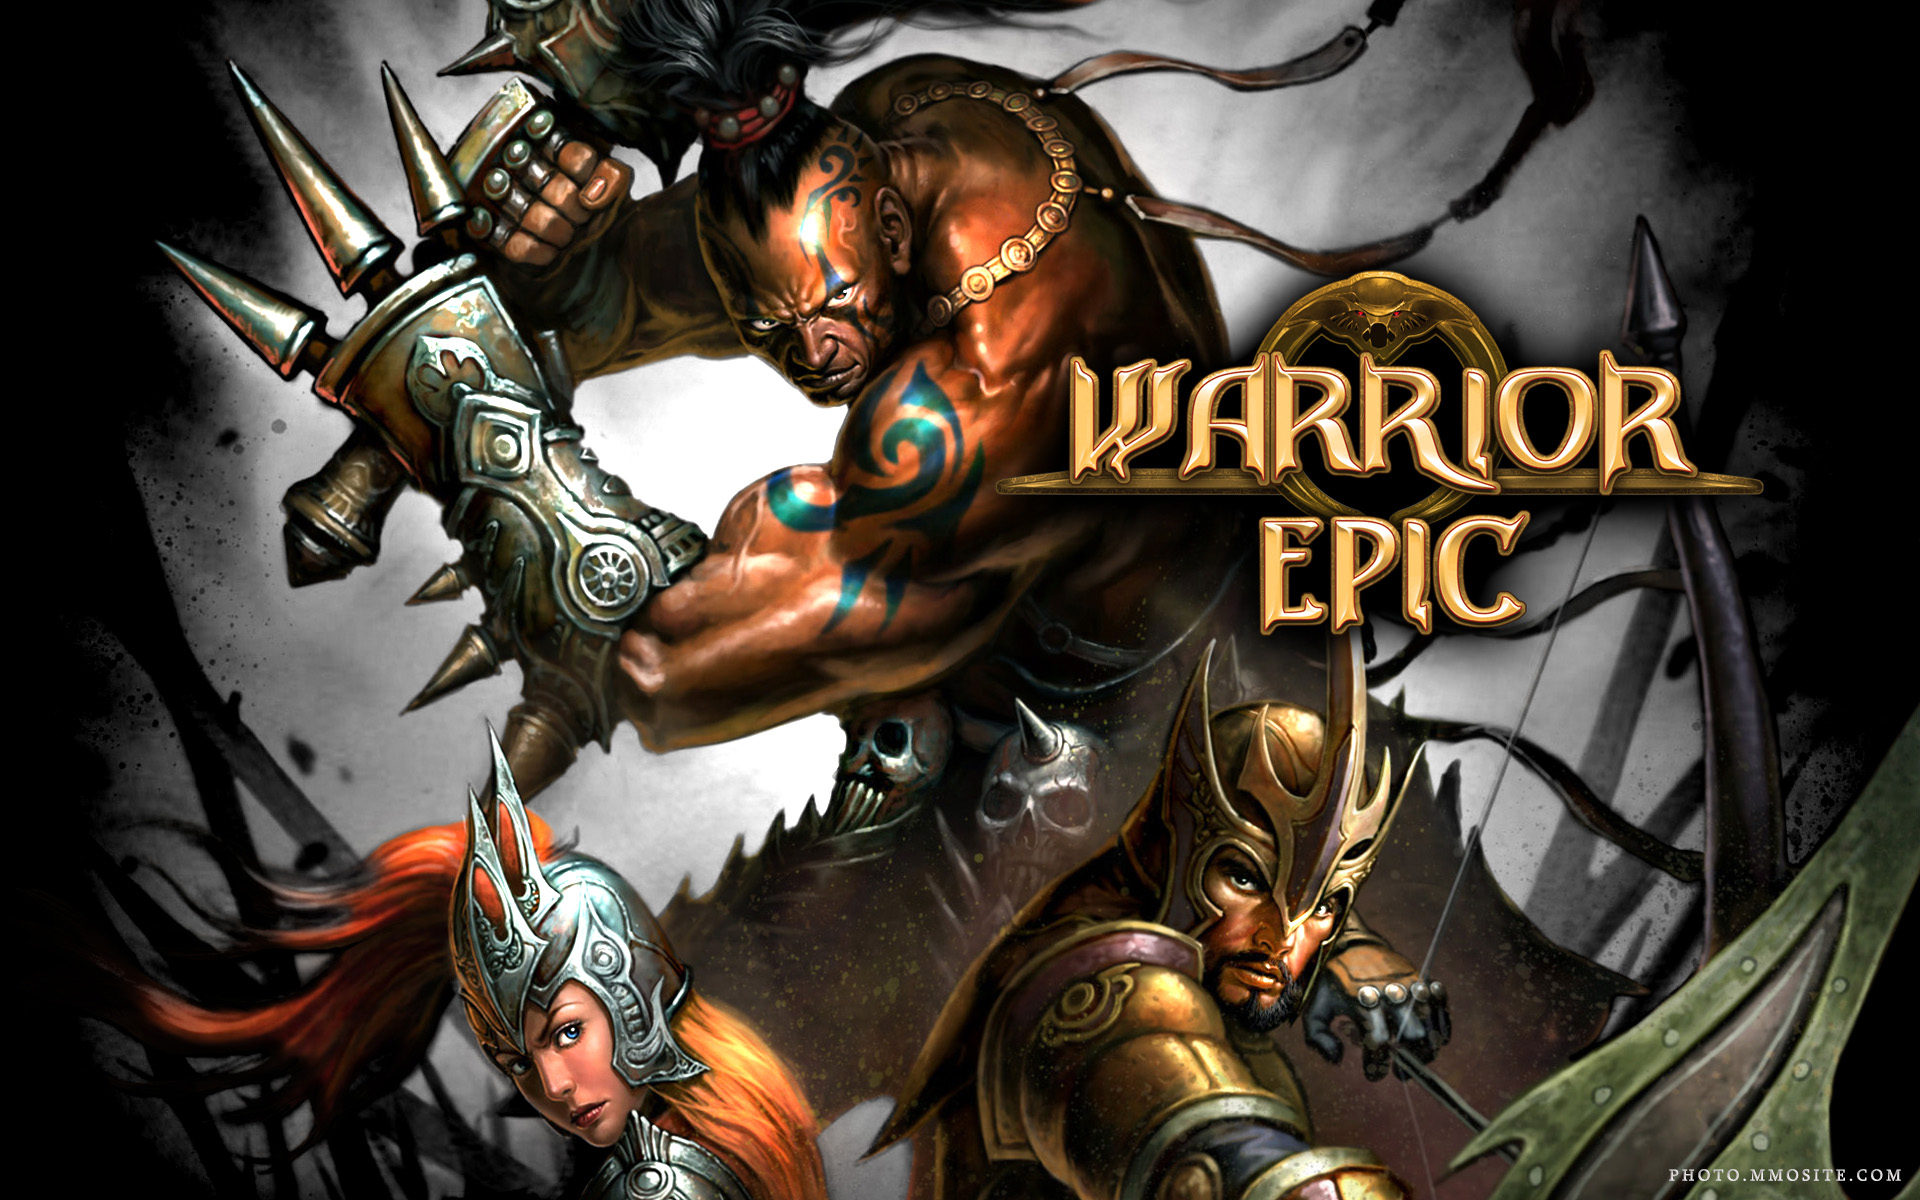 Warrior Epic #1